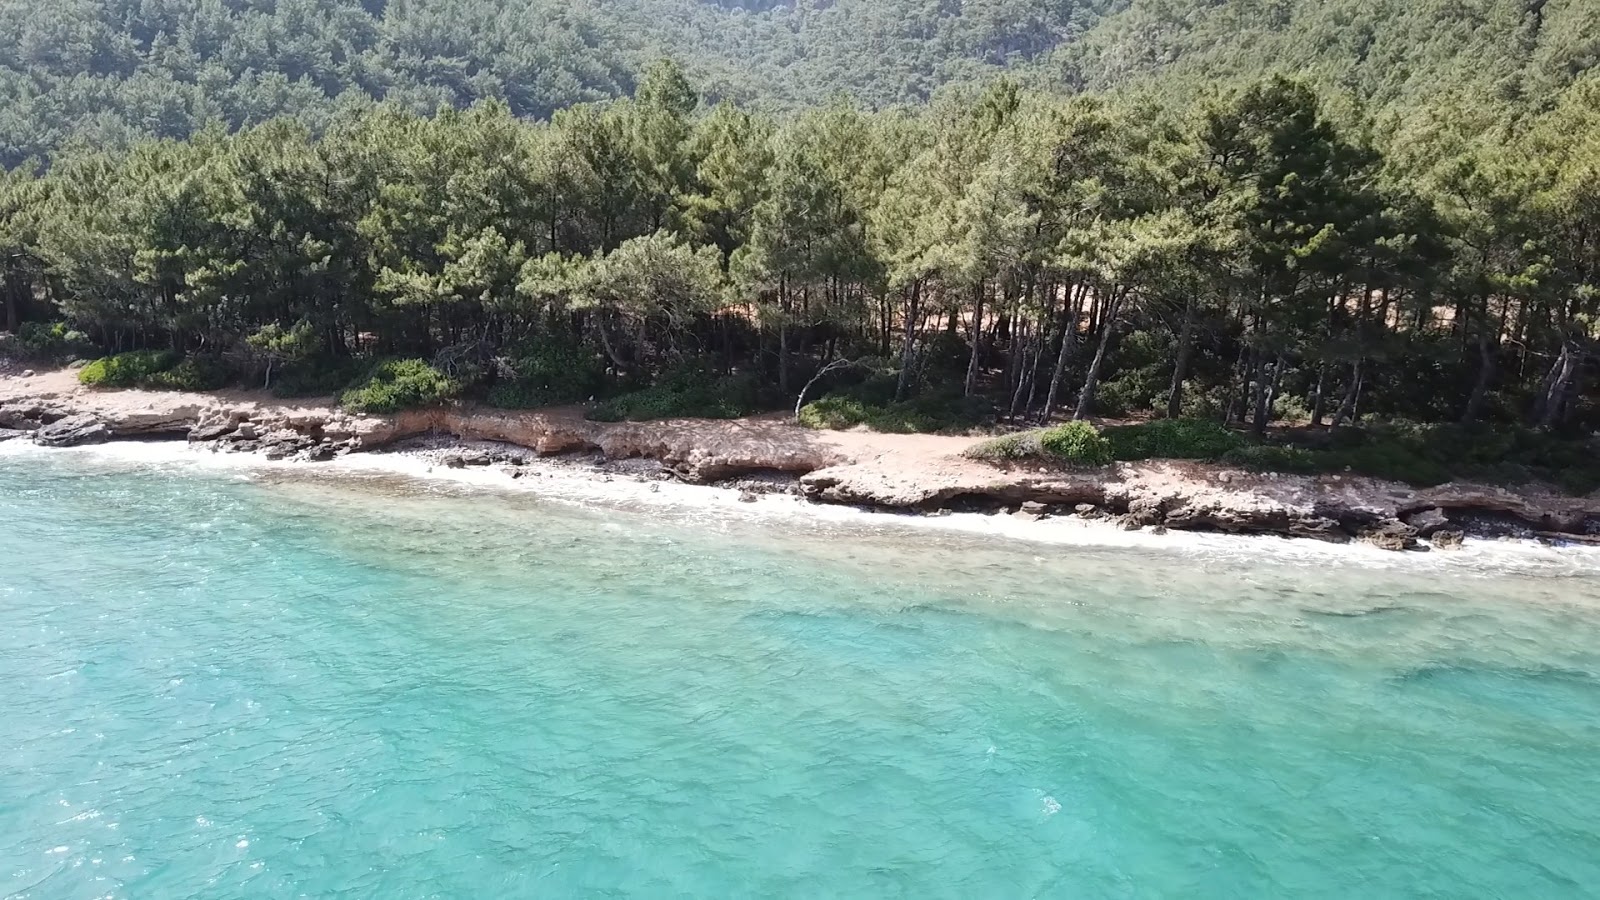 Fotografie cu Ufuk beach cu o suprafață de apa pură turcoaz